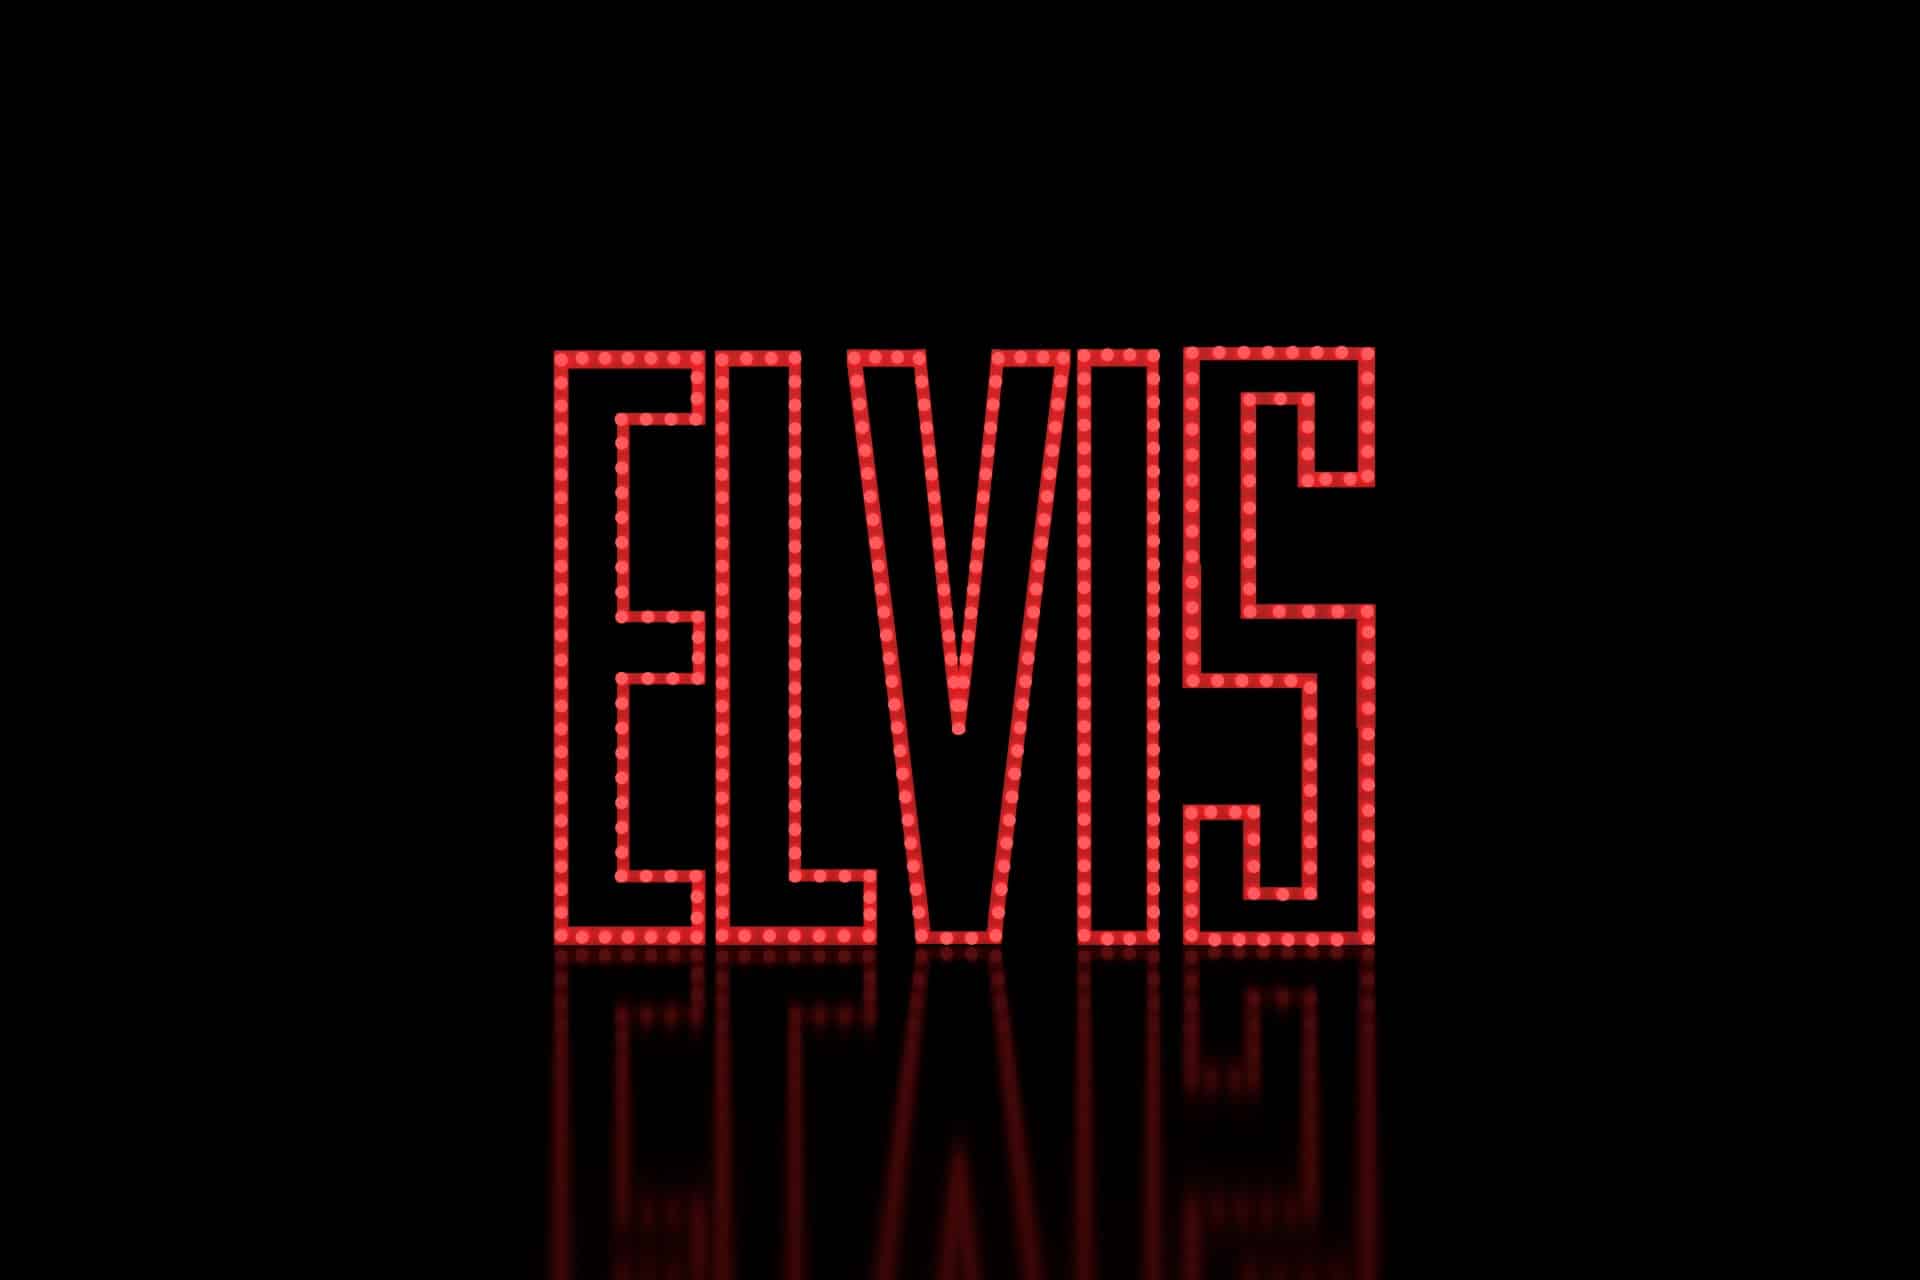 If i can dream. Элвис надпись. Элвис Пресли надпись. Elvis Presley лого. Elvis Presley надпись.